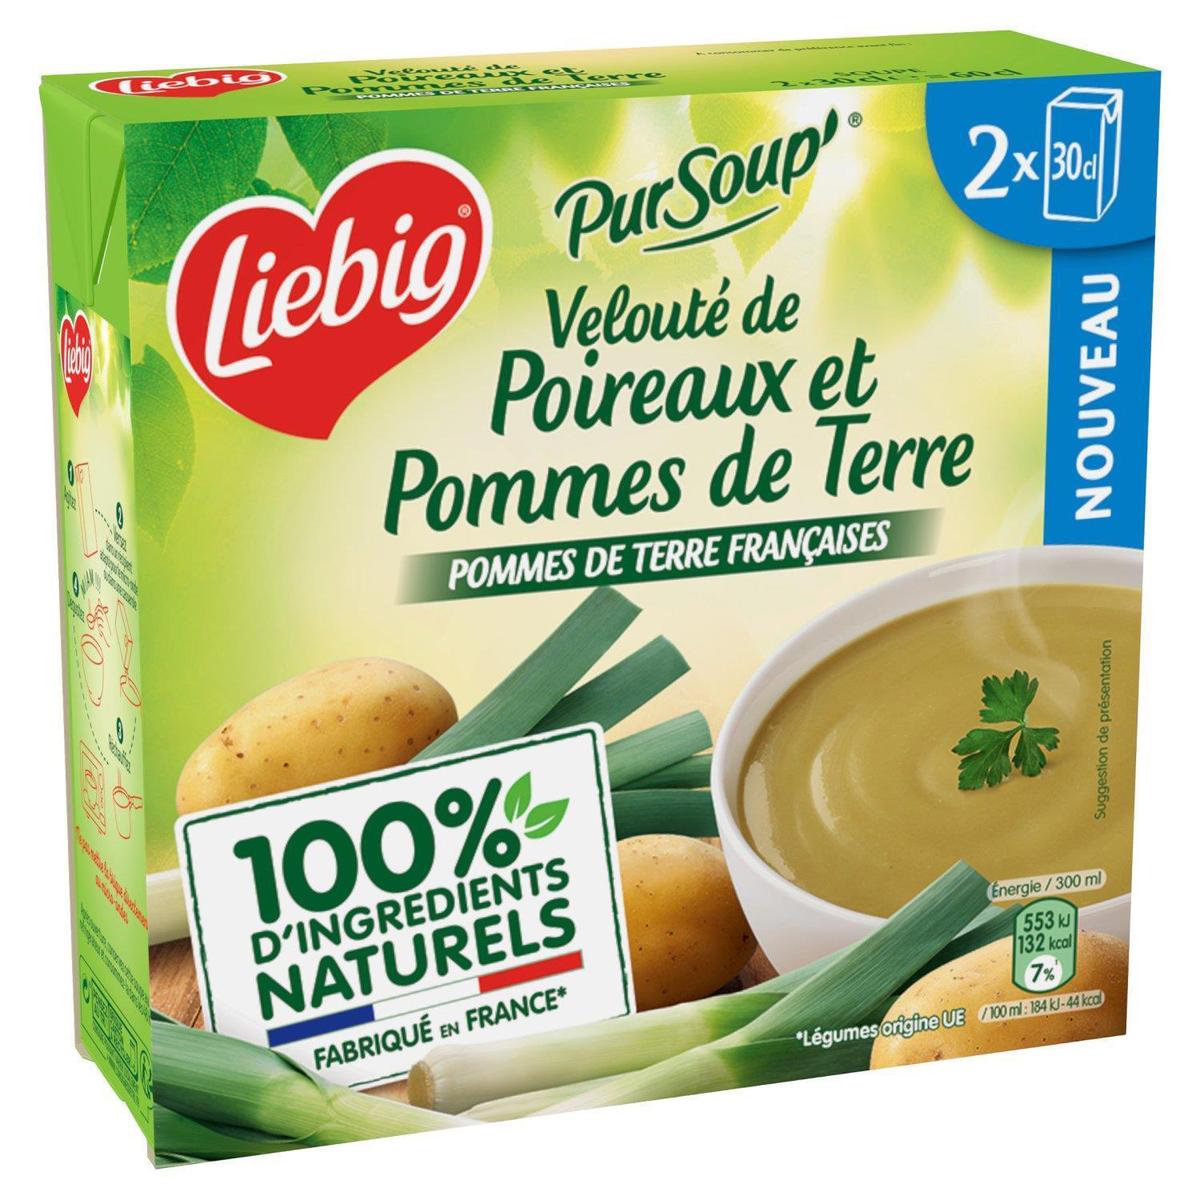 Acheter Liebig Soupe Velouté de Poireaux et Pommes de Terre, 2x30cl